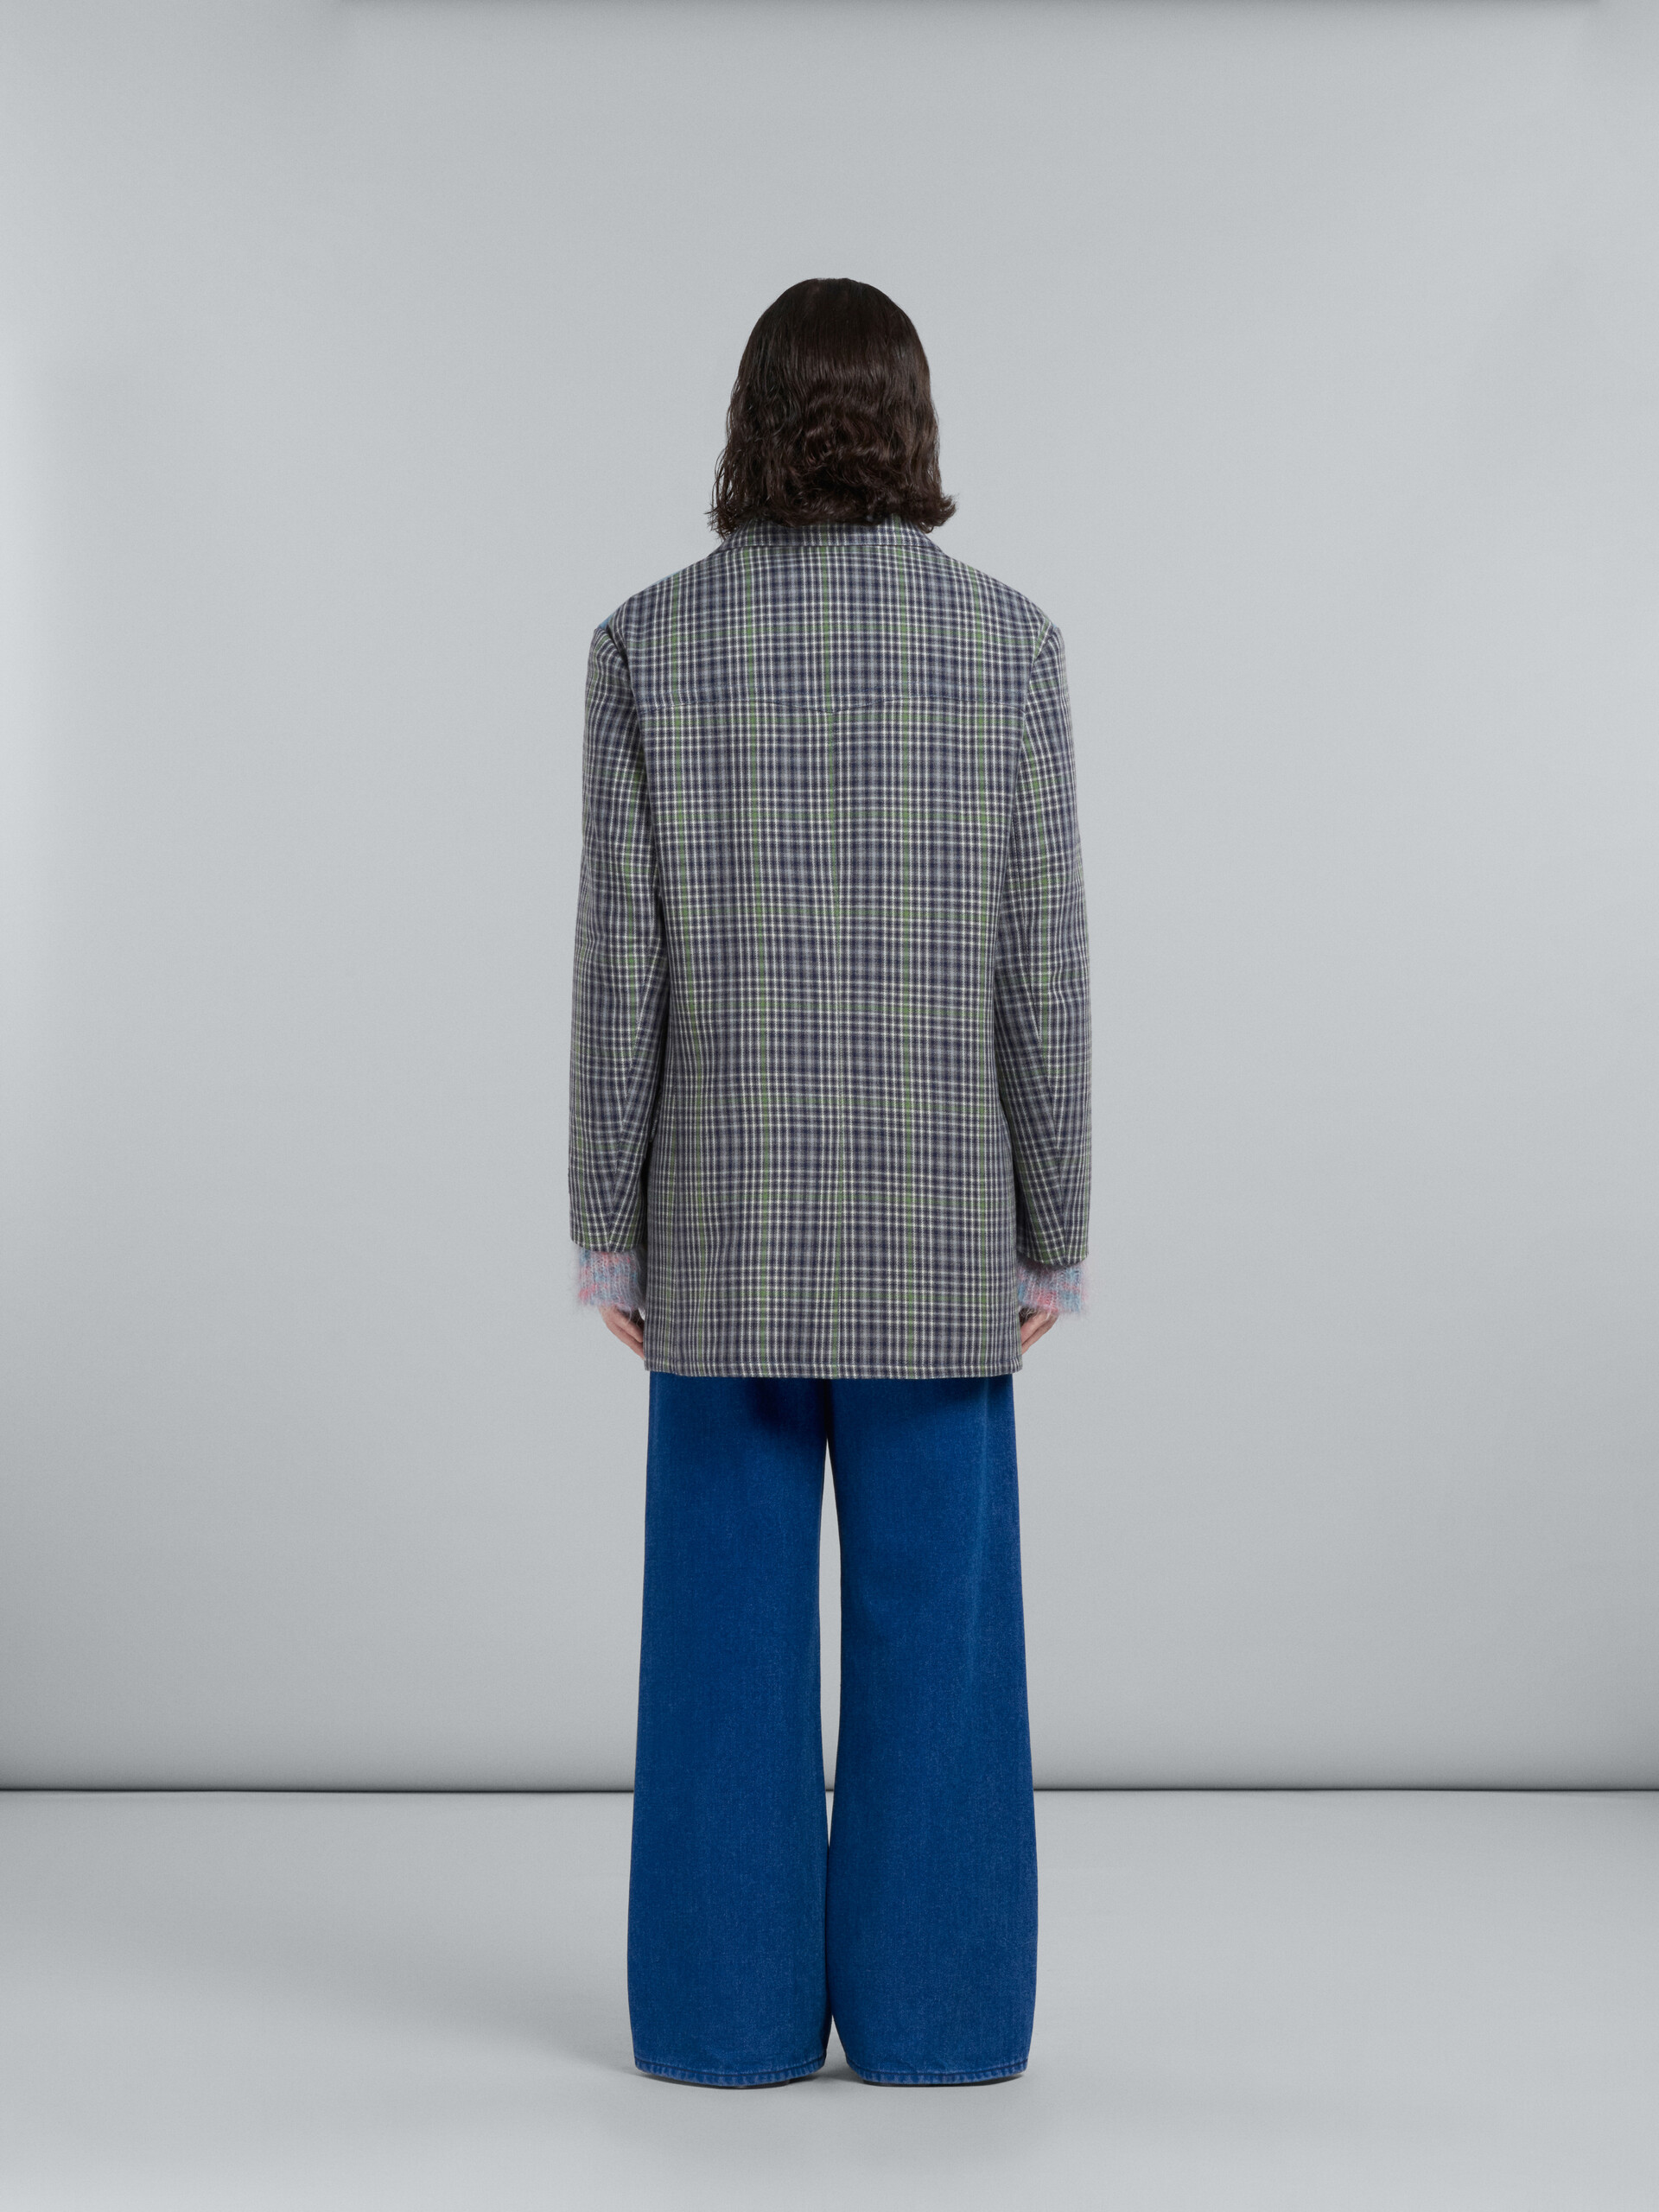 Doppelreihiger Mantel aus grau karierter Wolle - Mäntel - Image 3